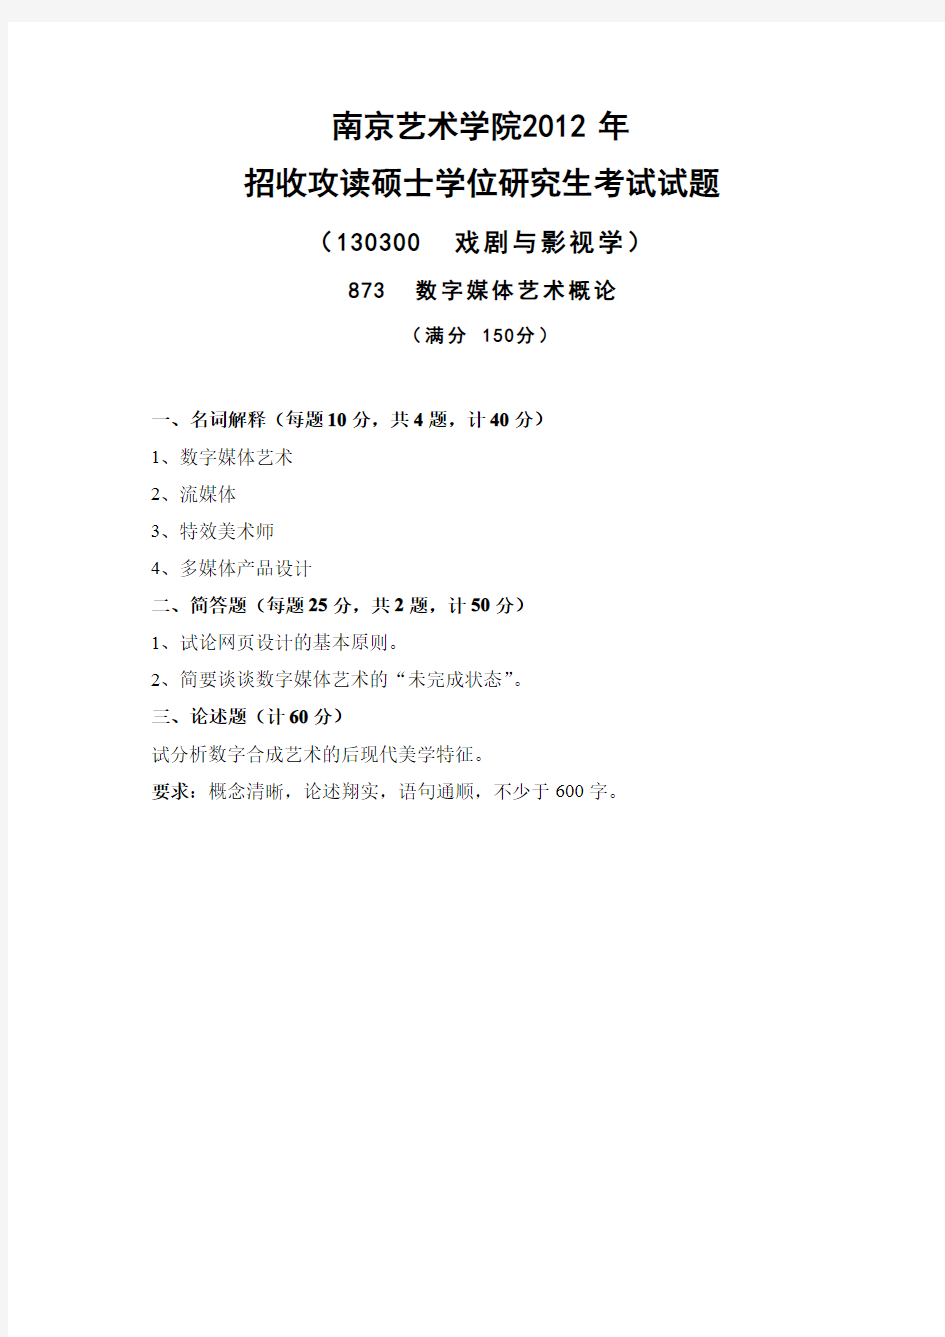 南京艺术学院考研真题_873数字媒体艺术概论2011-2013年